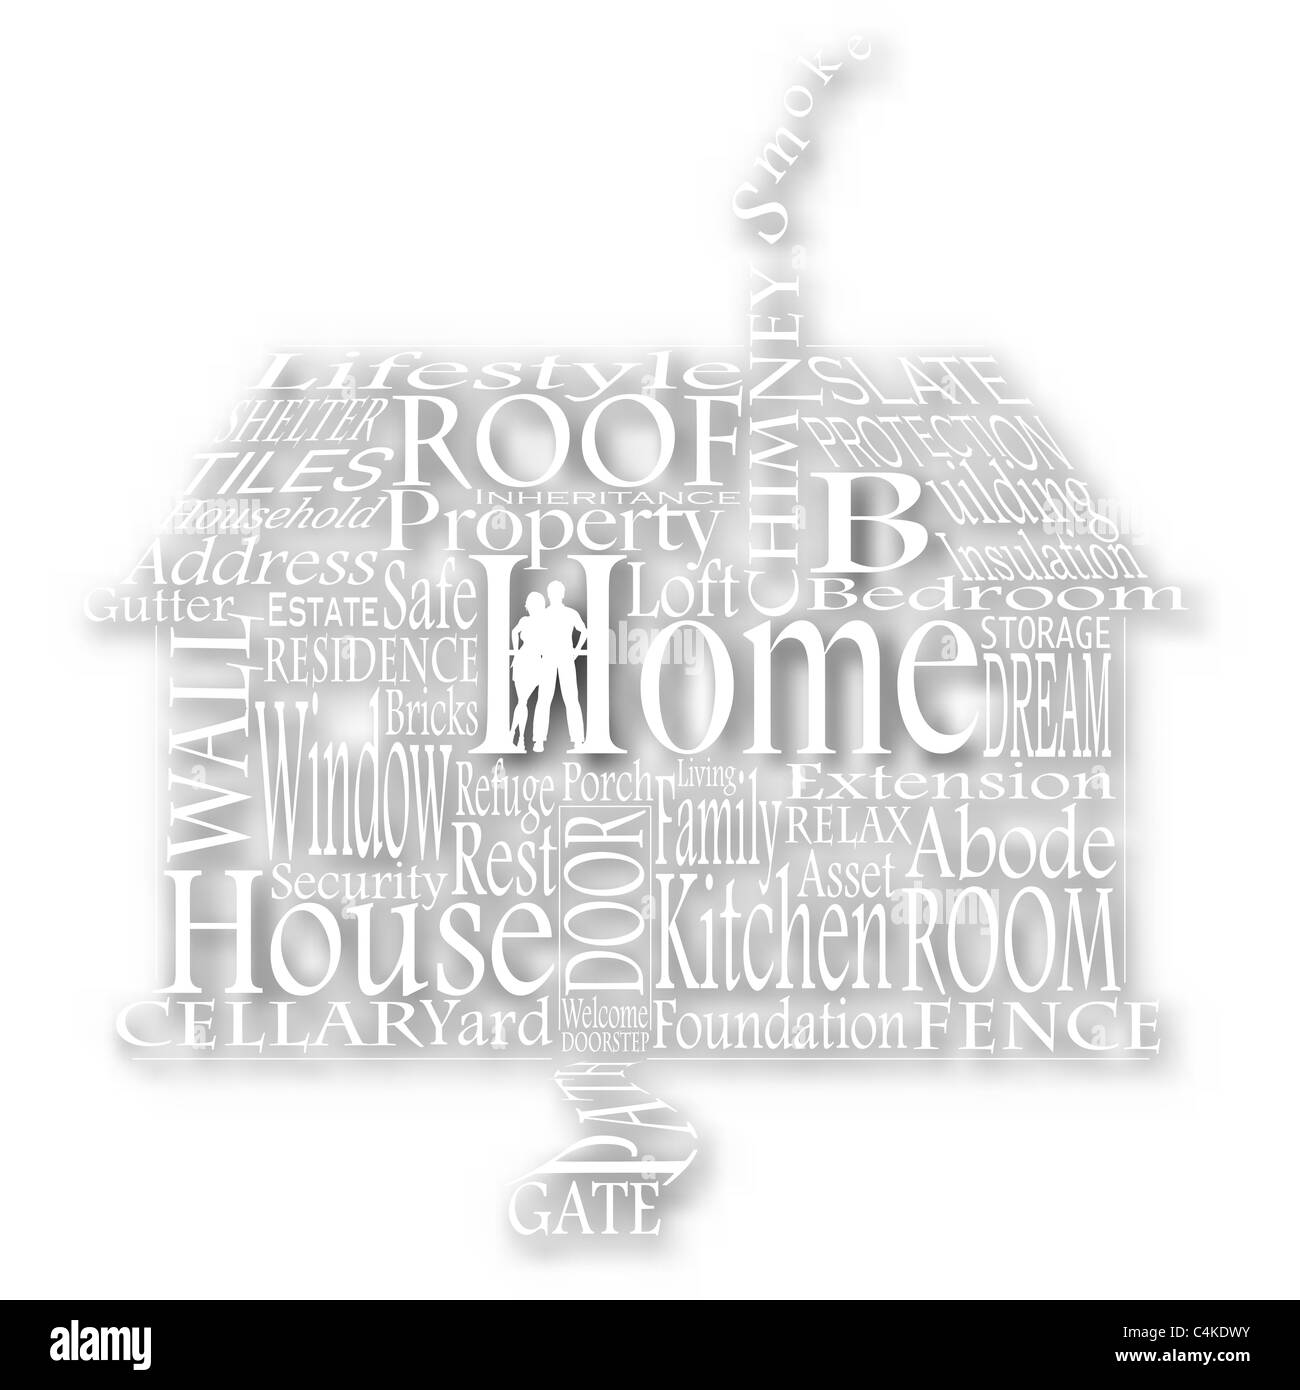 Illustrato spaccato di una casa fatta da parole casalinga con ombreggiatura di sfondo Foto Stock